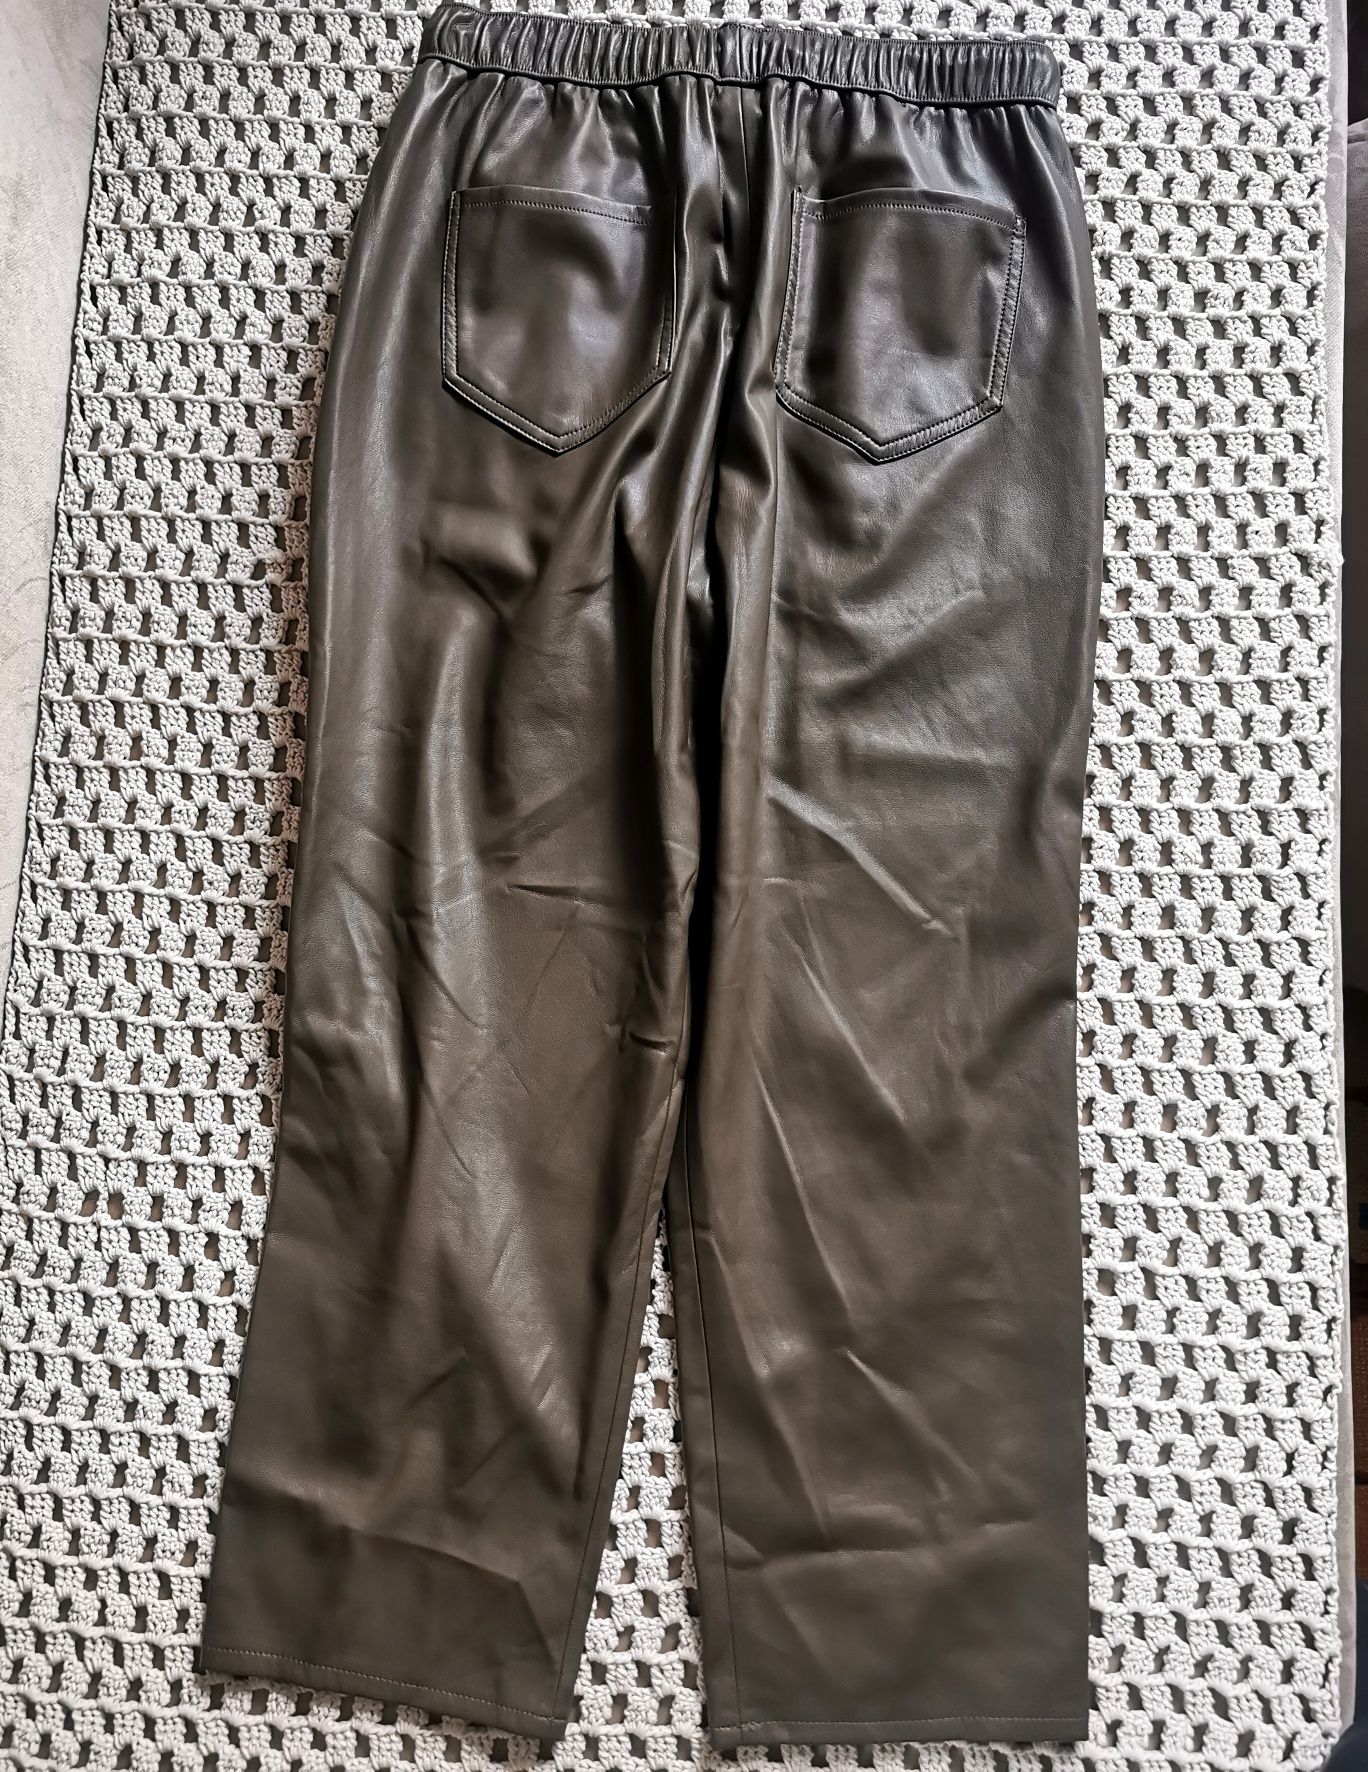 ZARA - wiązane spodnie khaki - R 40